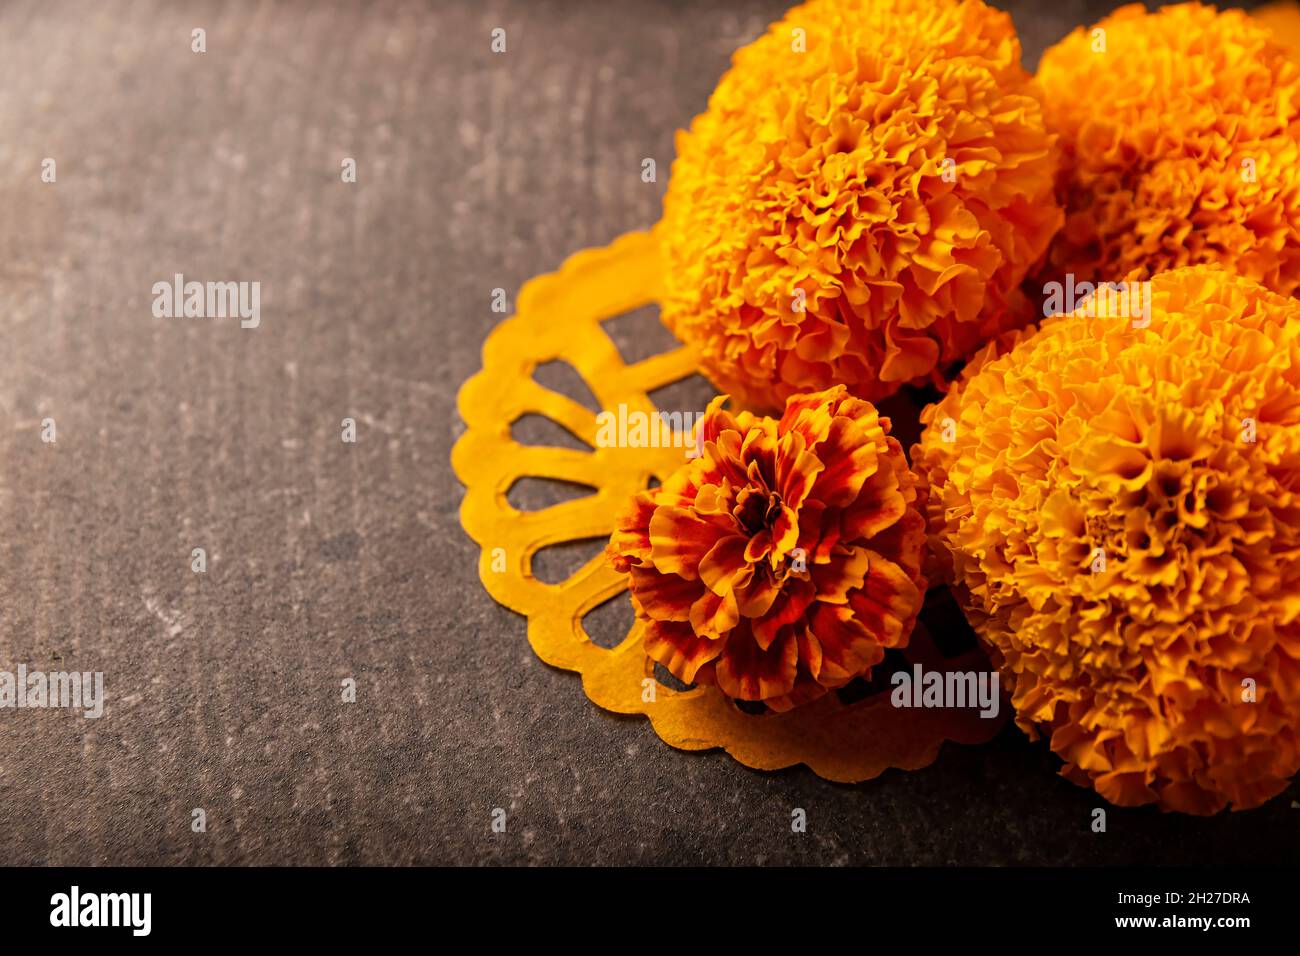 Fleurs d'orange Cempasuchil ou Marigold.(Tagetes erecta) utilisé  traditionnellement dans les autels pour la célébration du jour des morts au  Mexique Photo Stock - Alamy